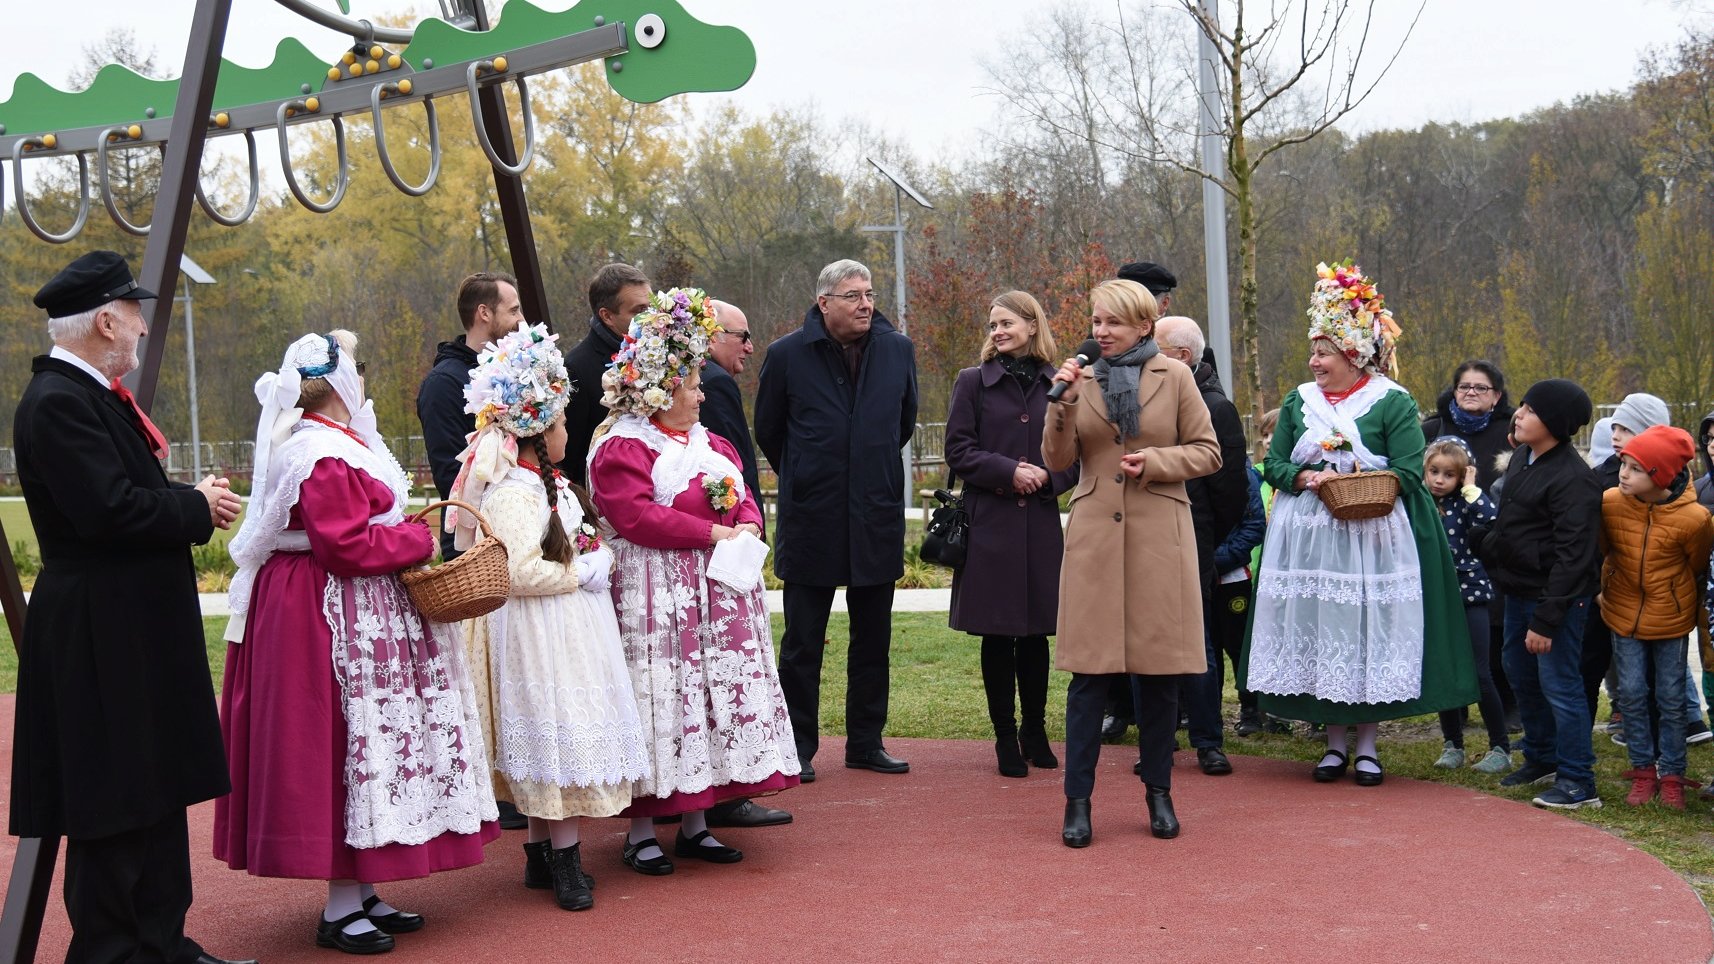 Park Bambrów Poznańskich oficjalnie otwarty